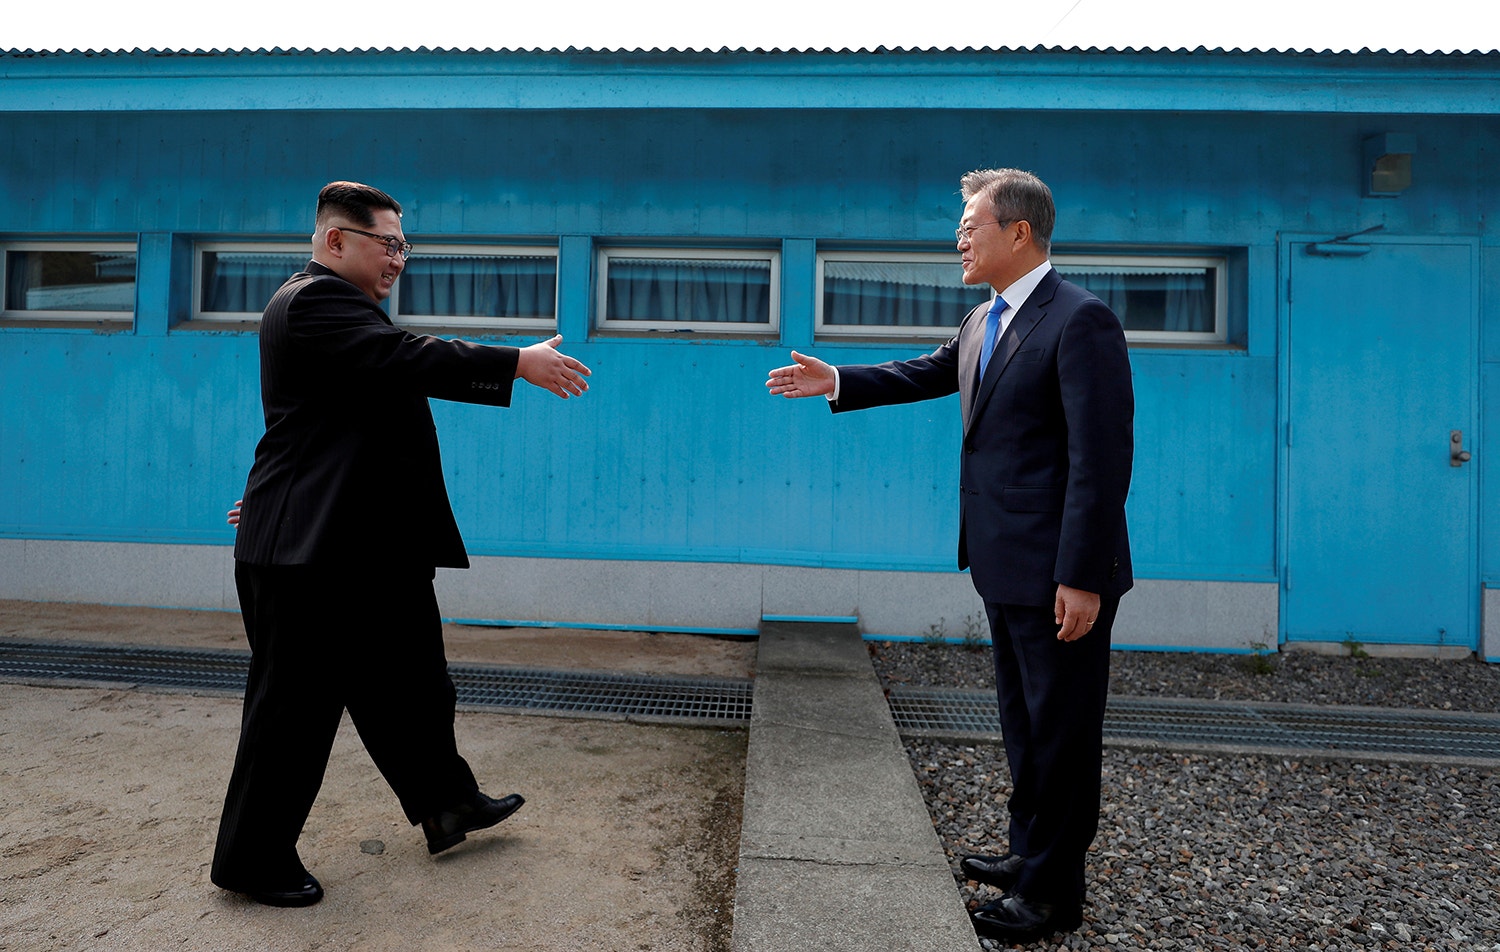  Encontro entre coreias /Reuters 